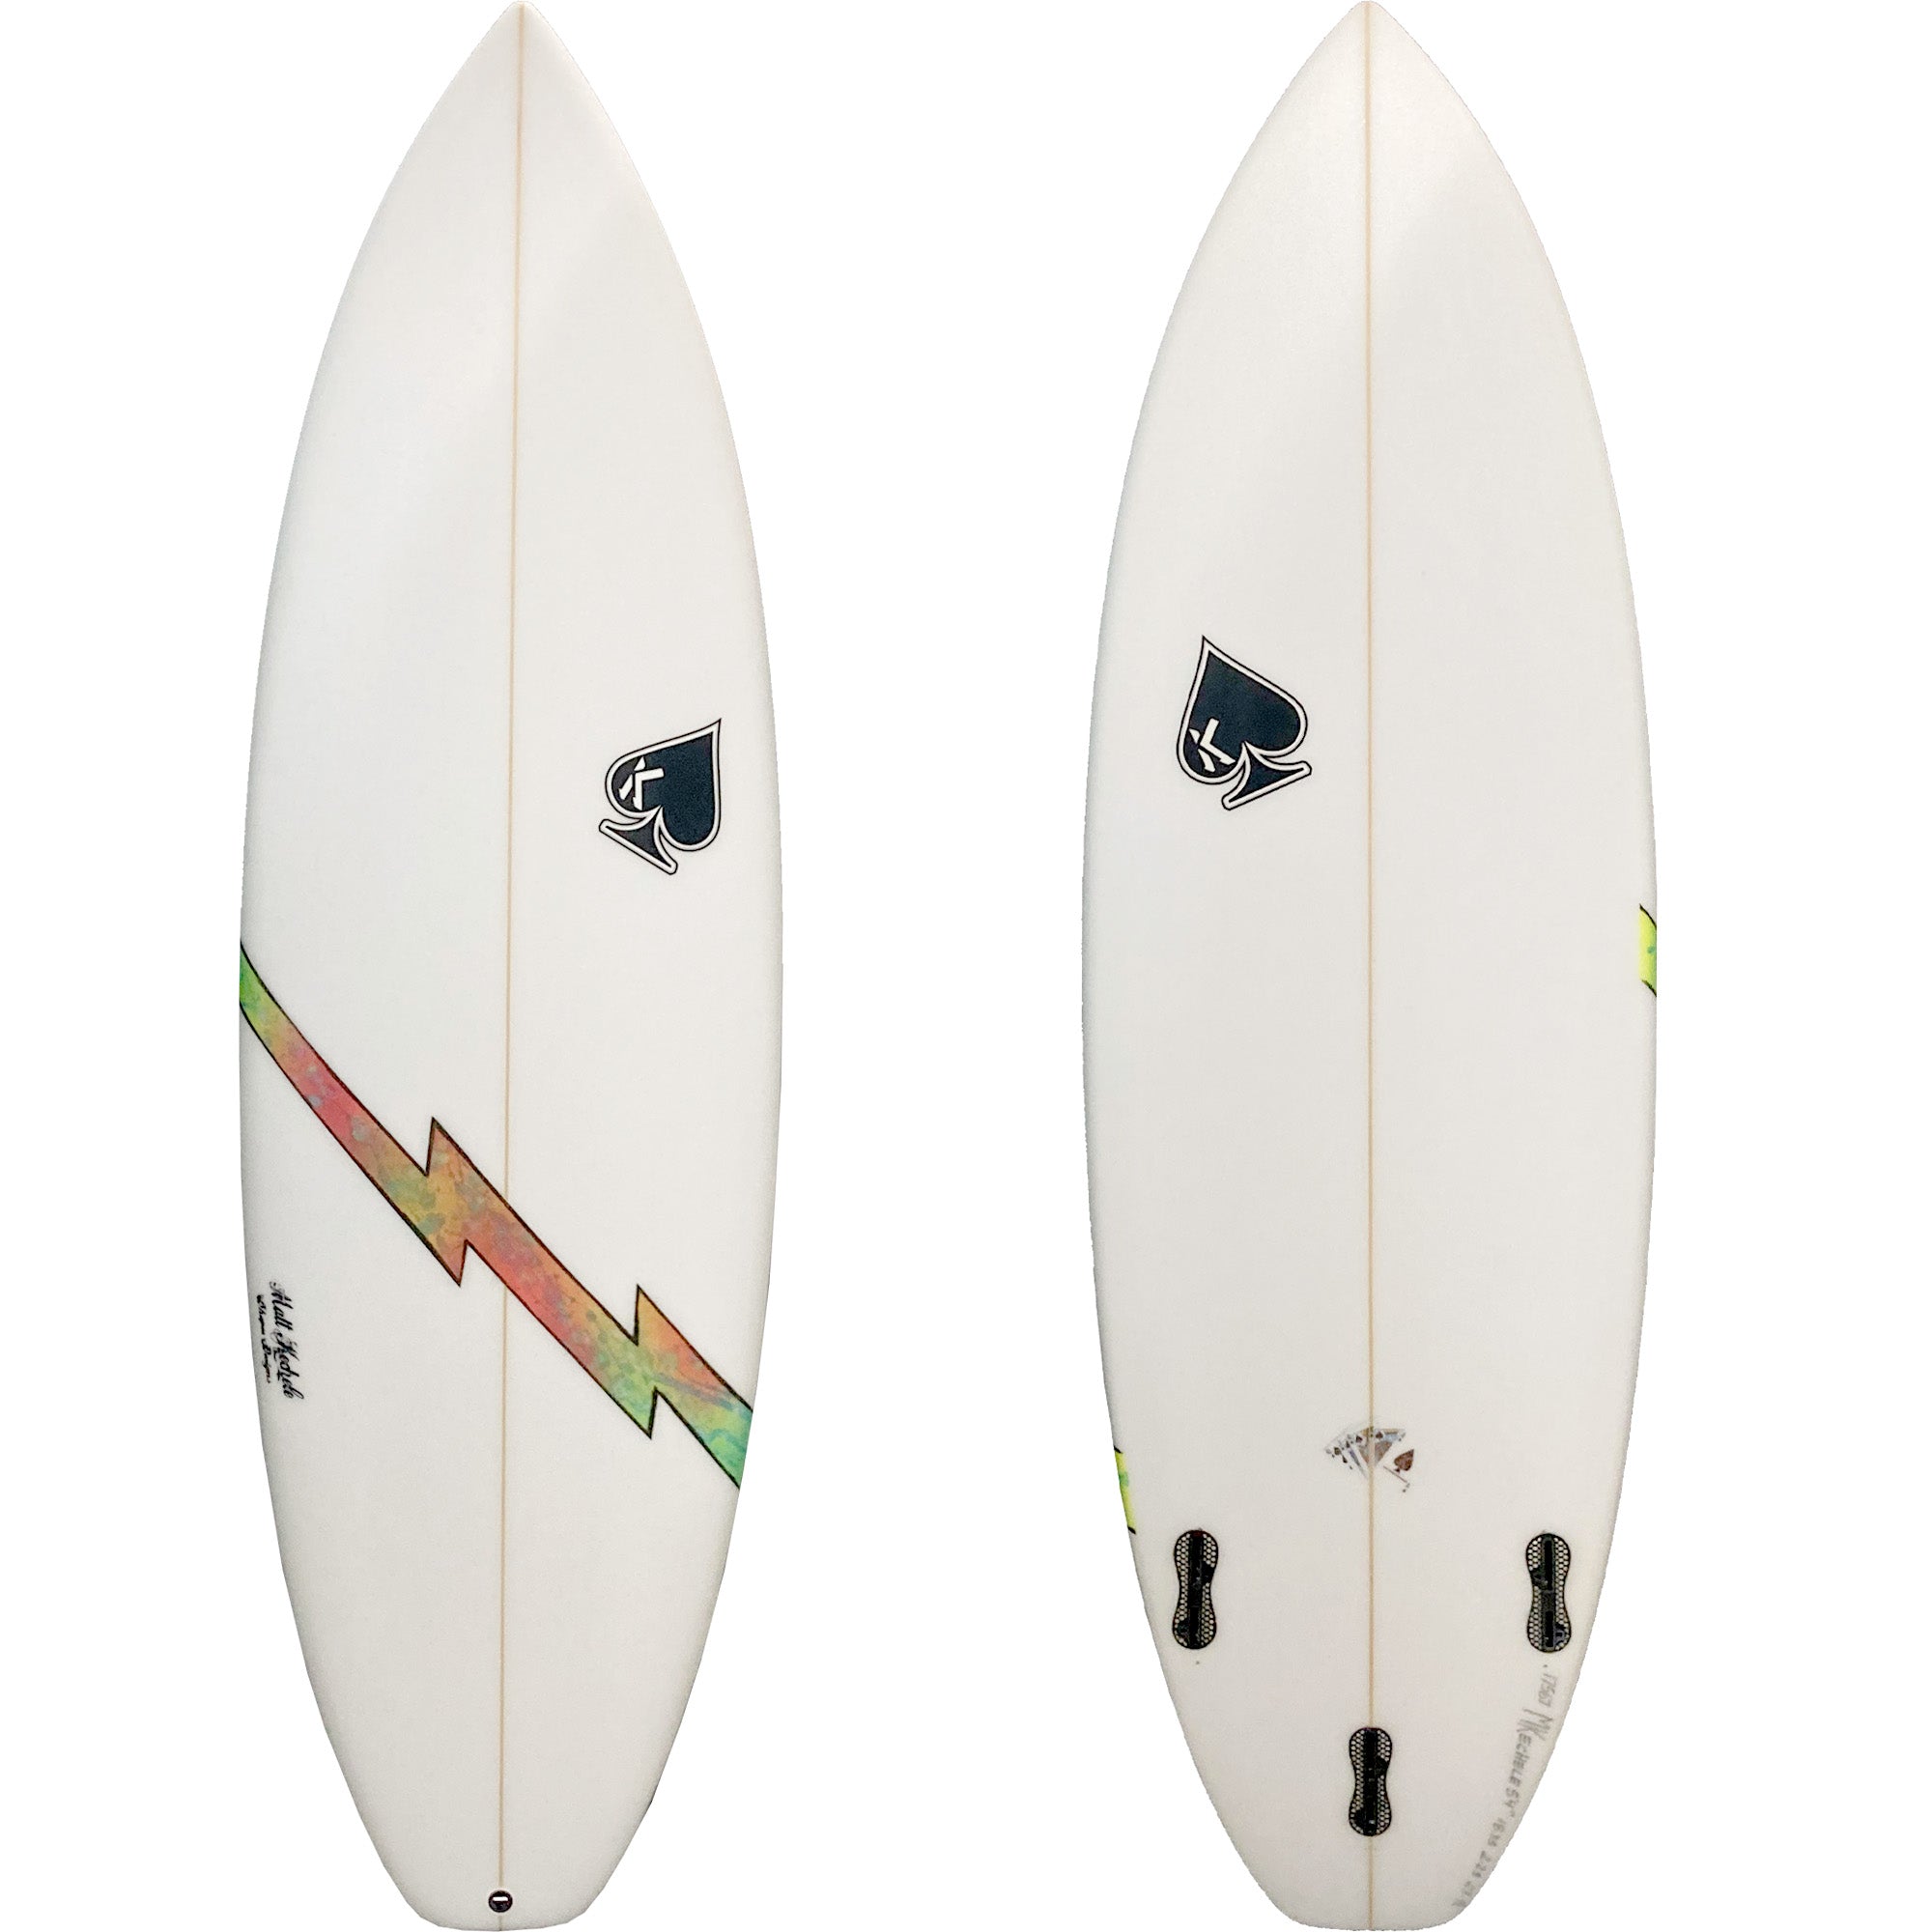 Kechele Lightning Bolt Surfboard - FCS II